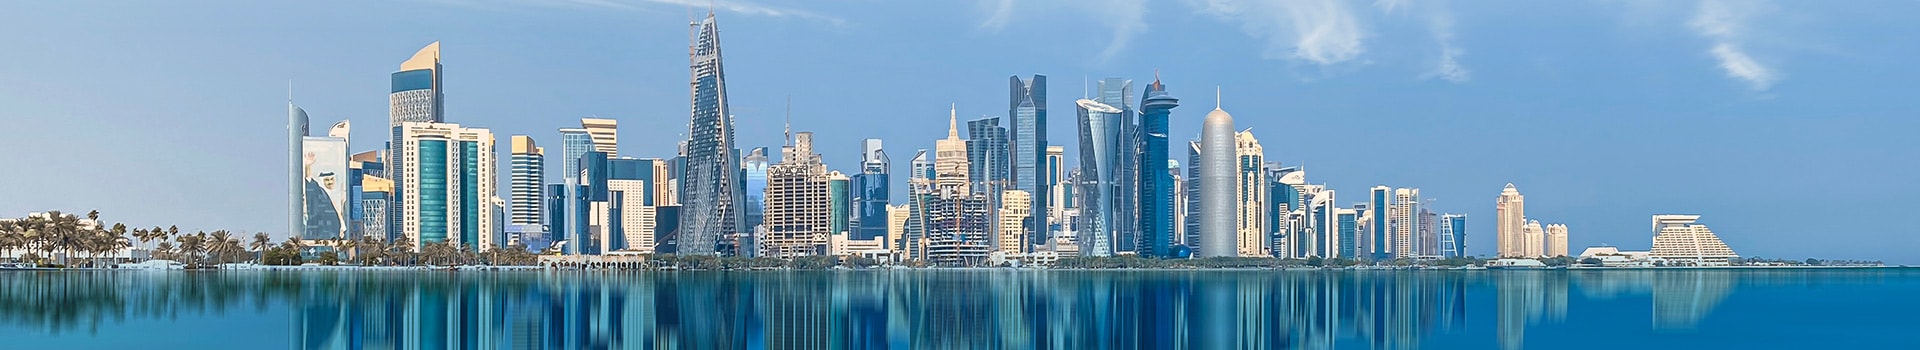 Milão - Doha